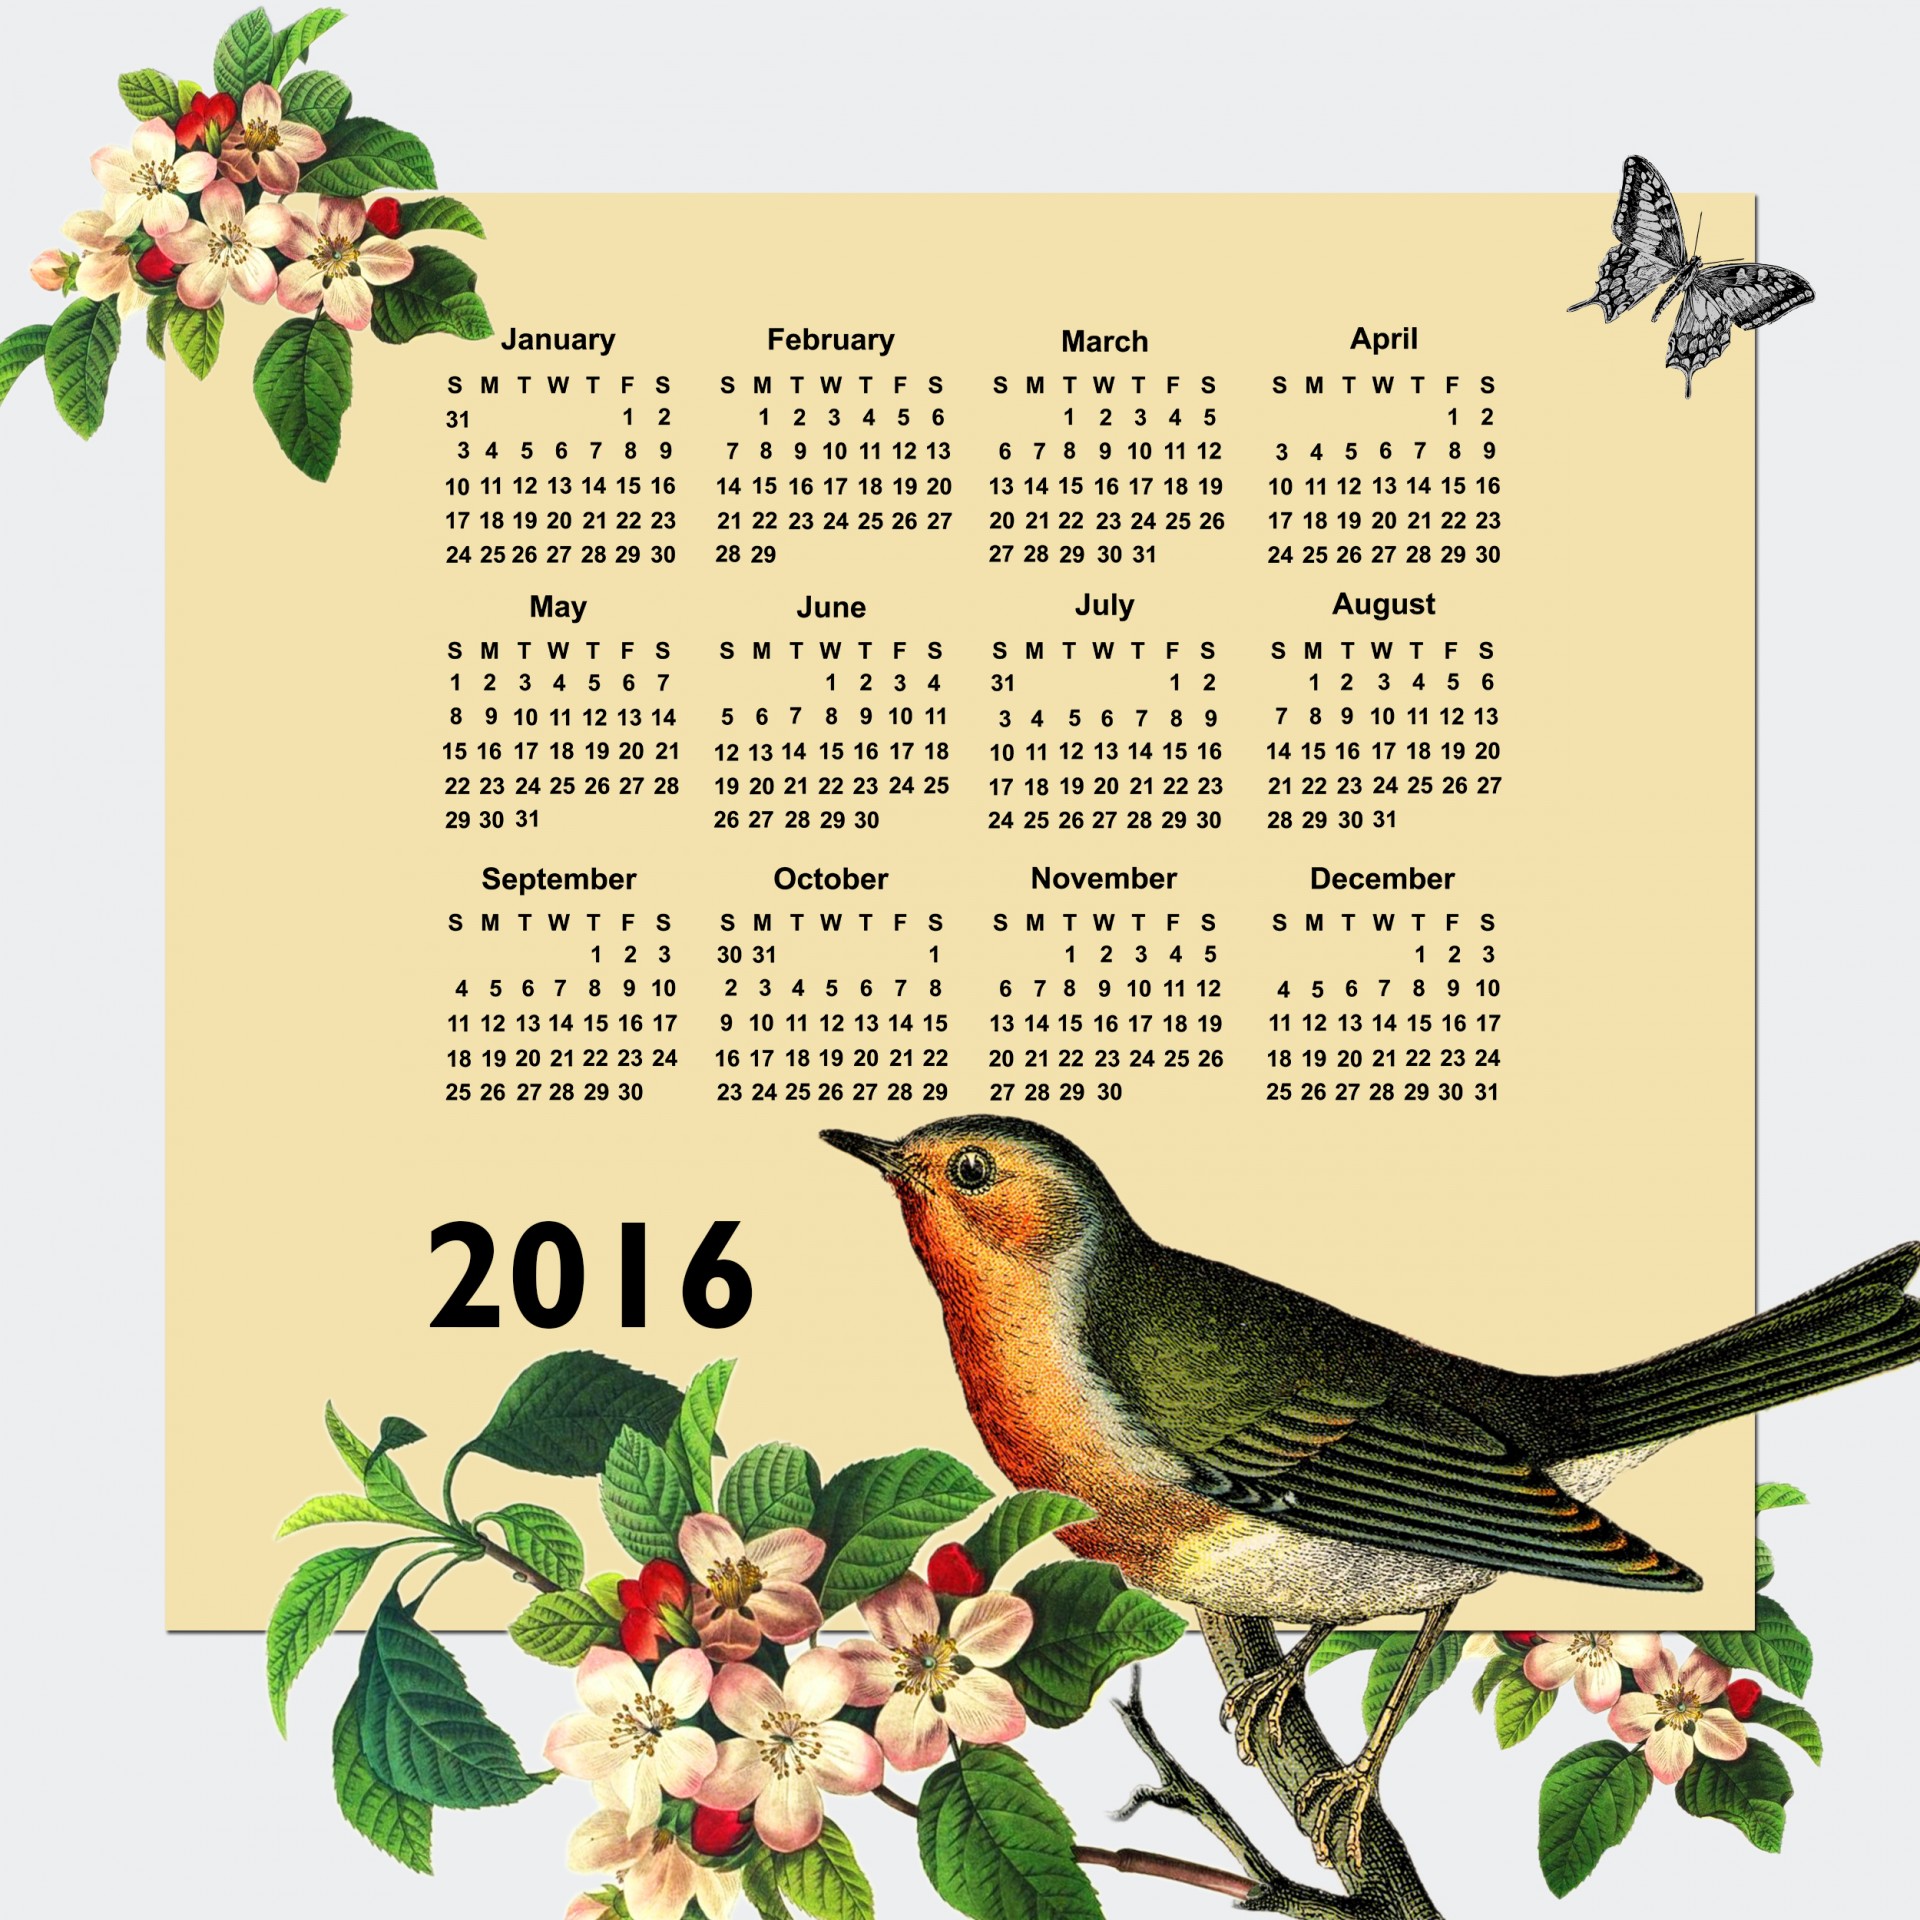 2016 calendar calendar 2016 free photo